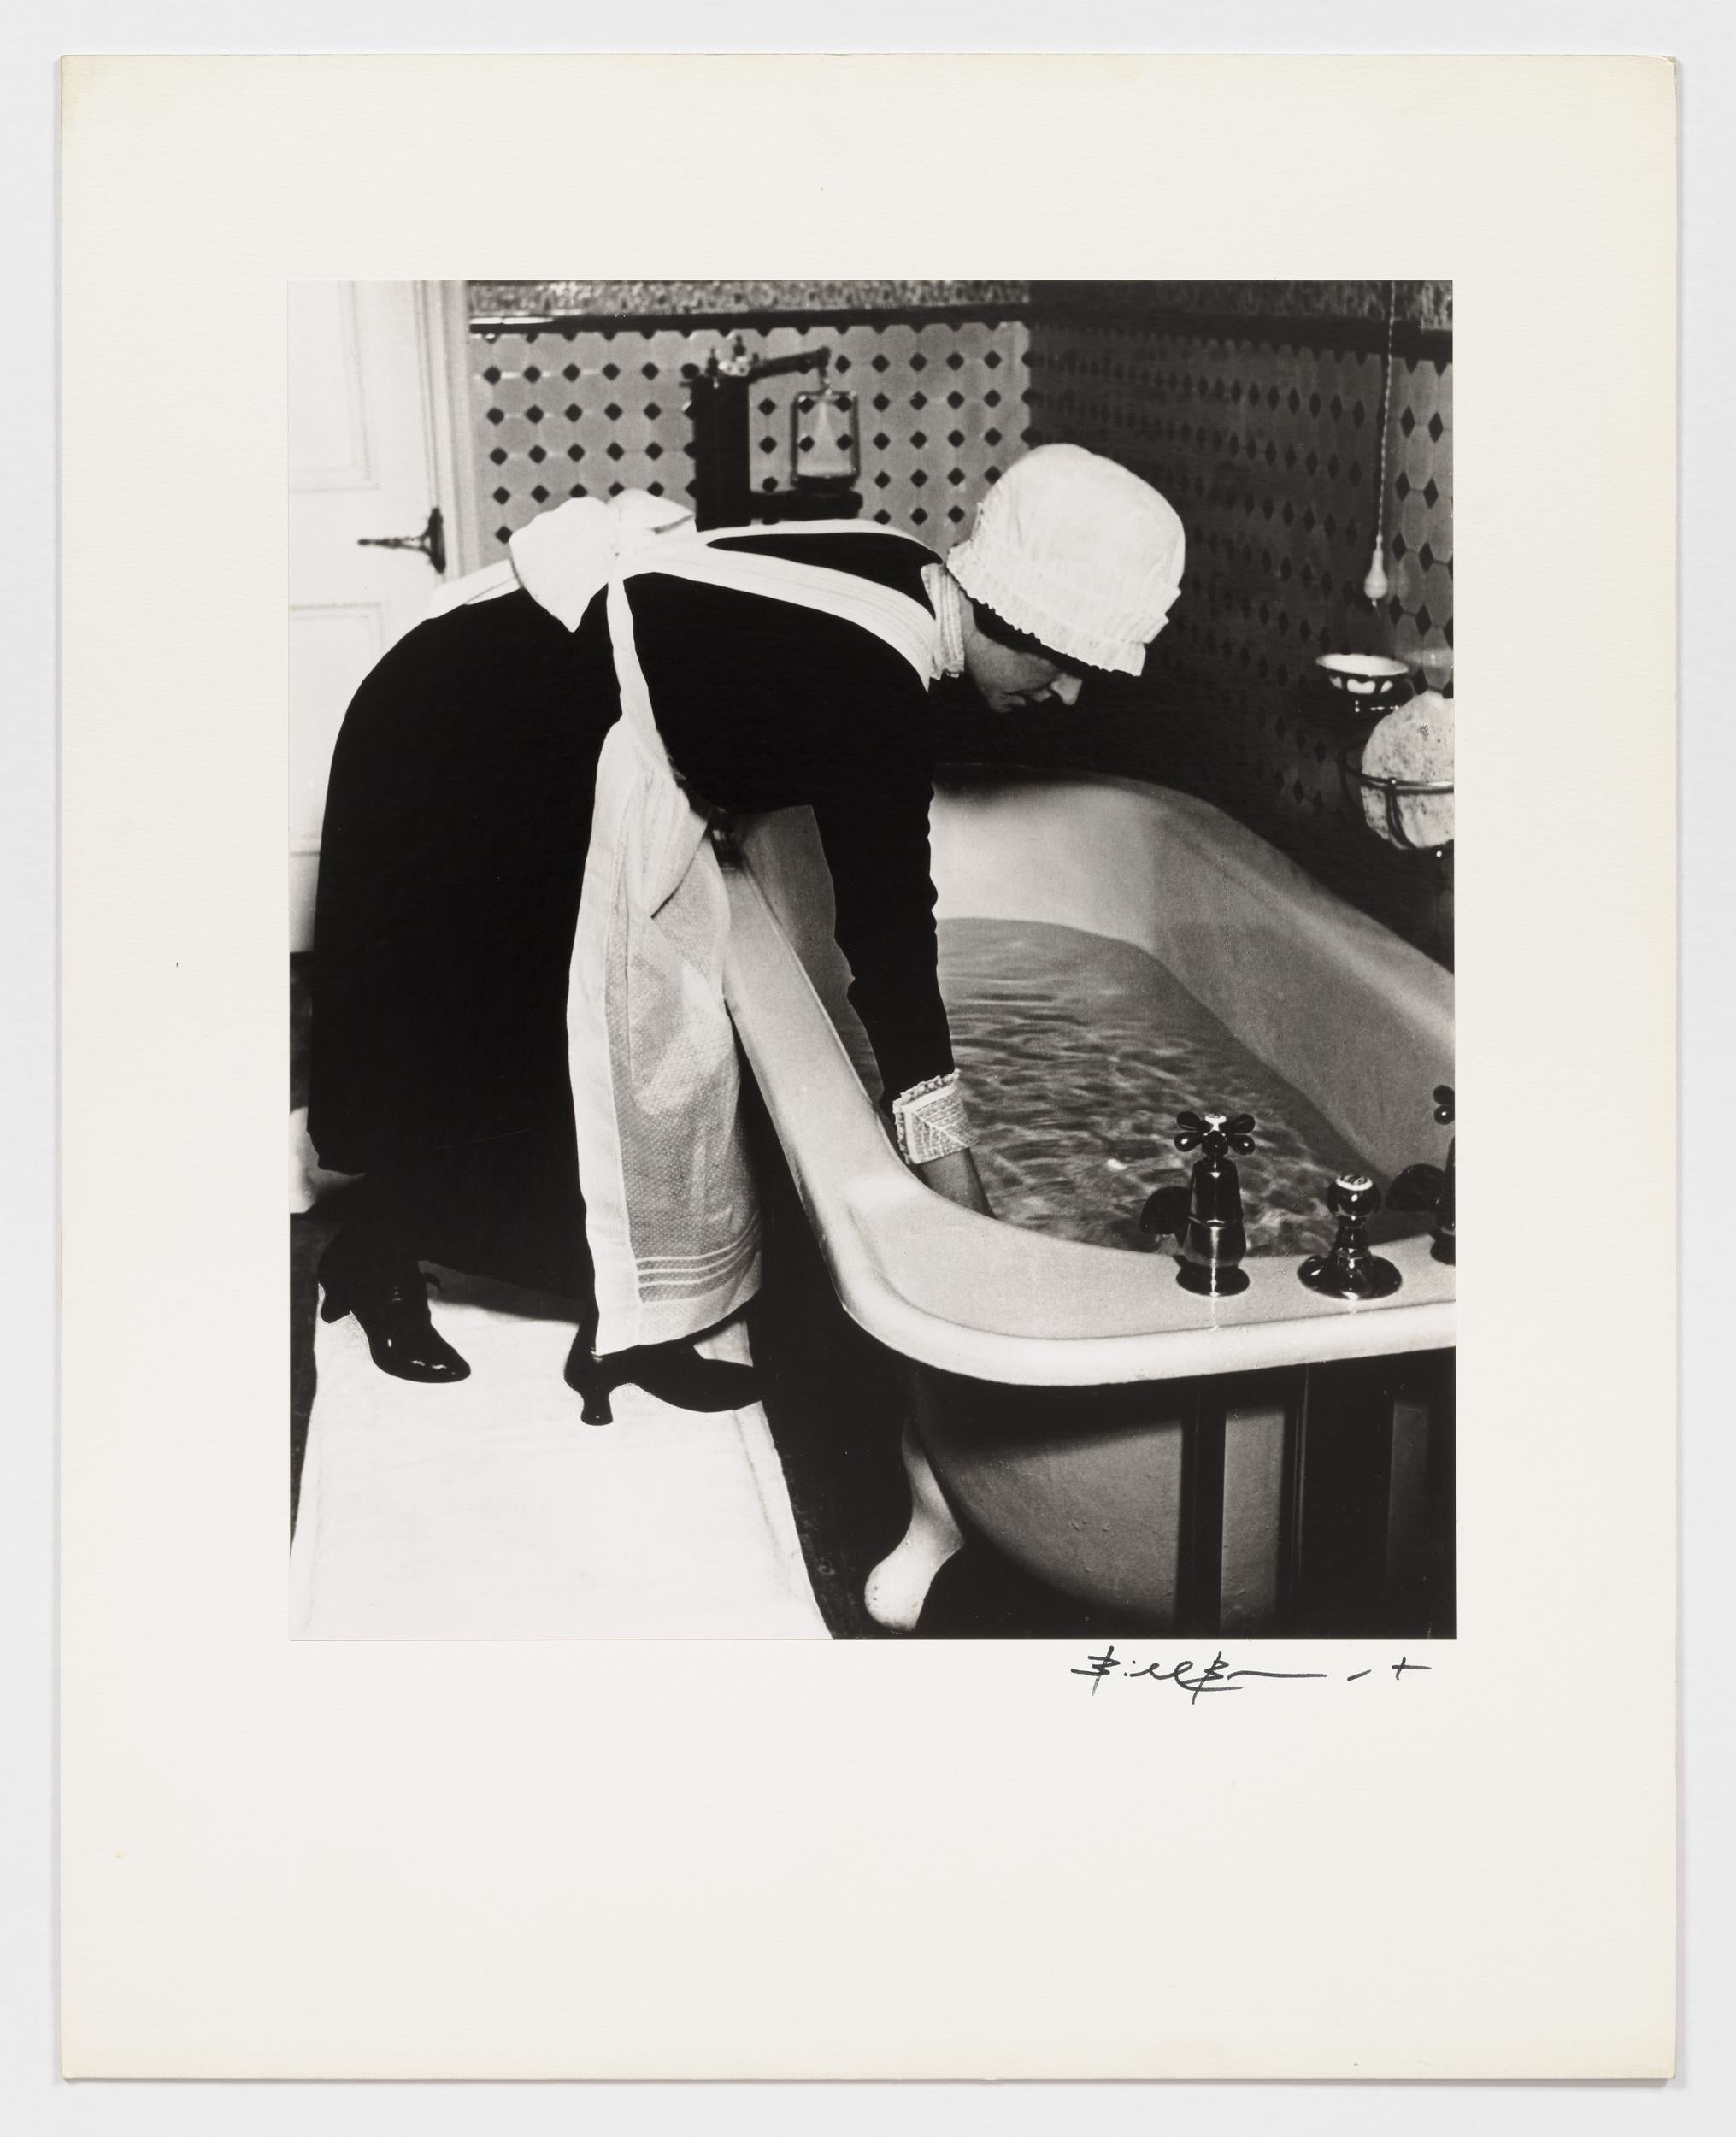 Parlourmaid preparing a bath before dinner - Photograph by Bill Brandt